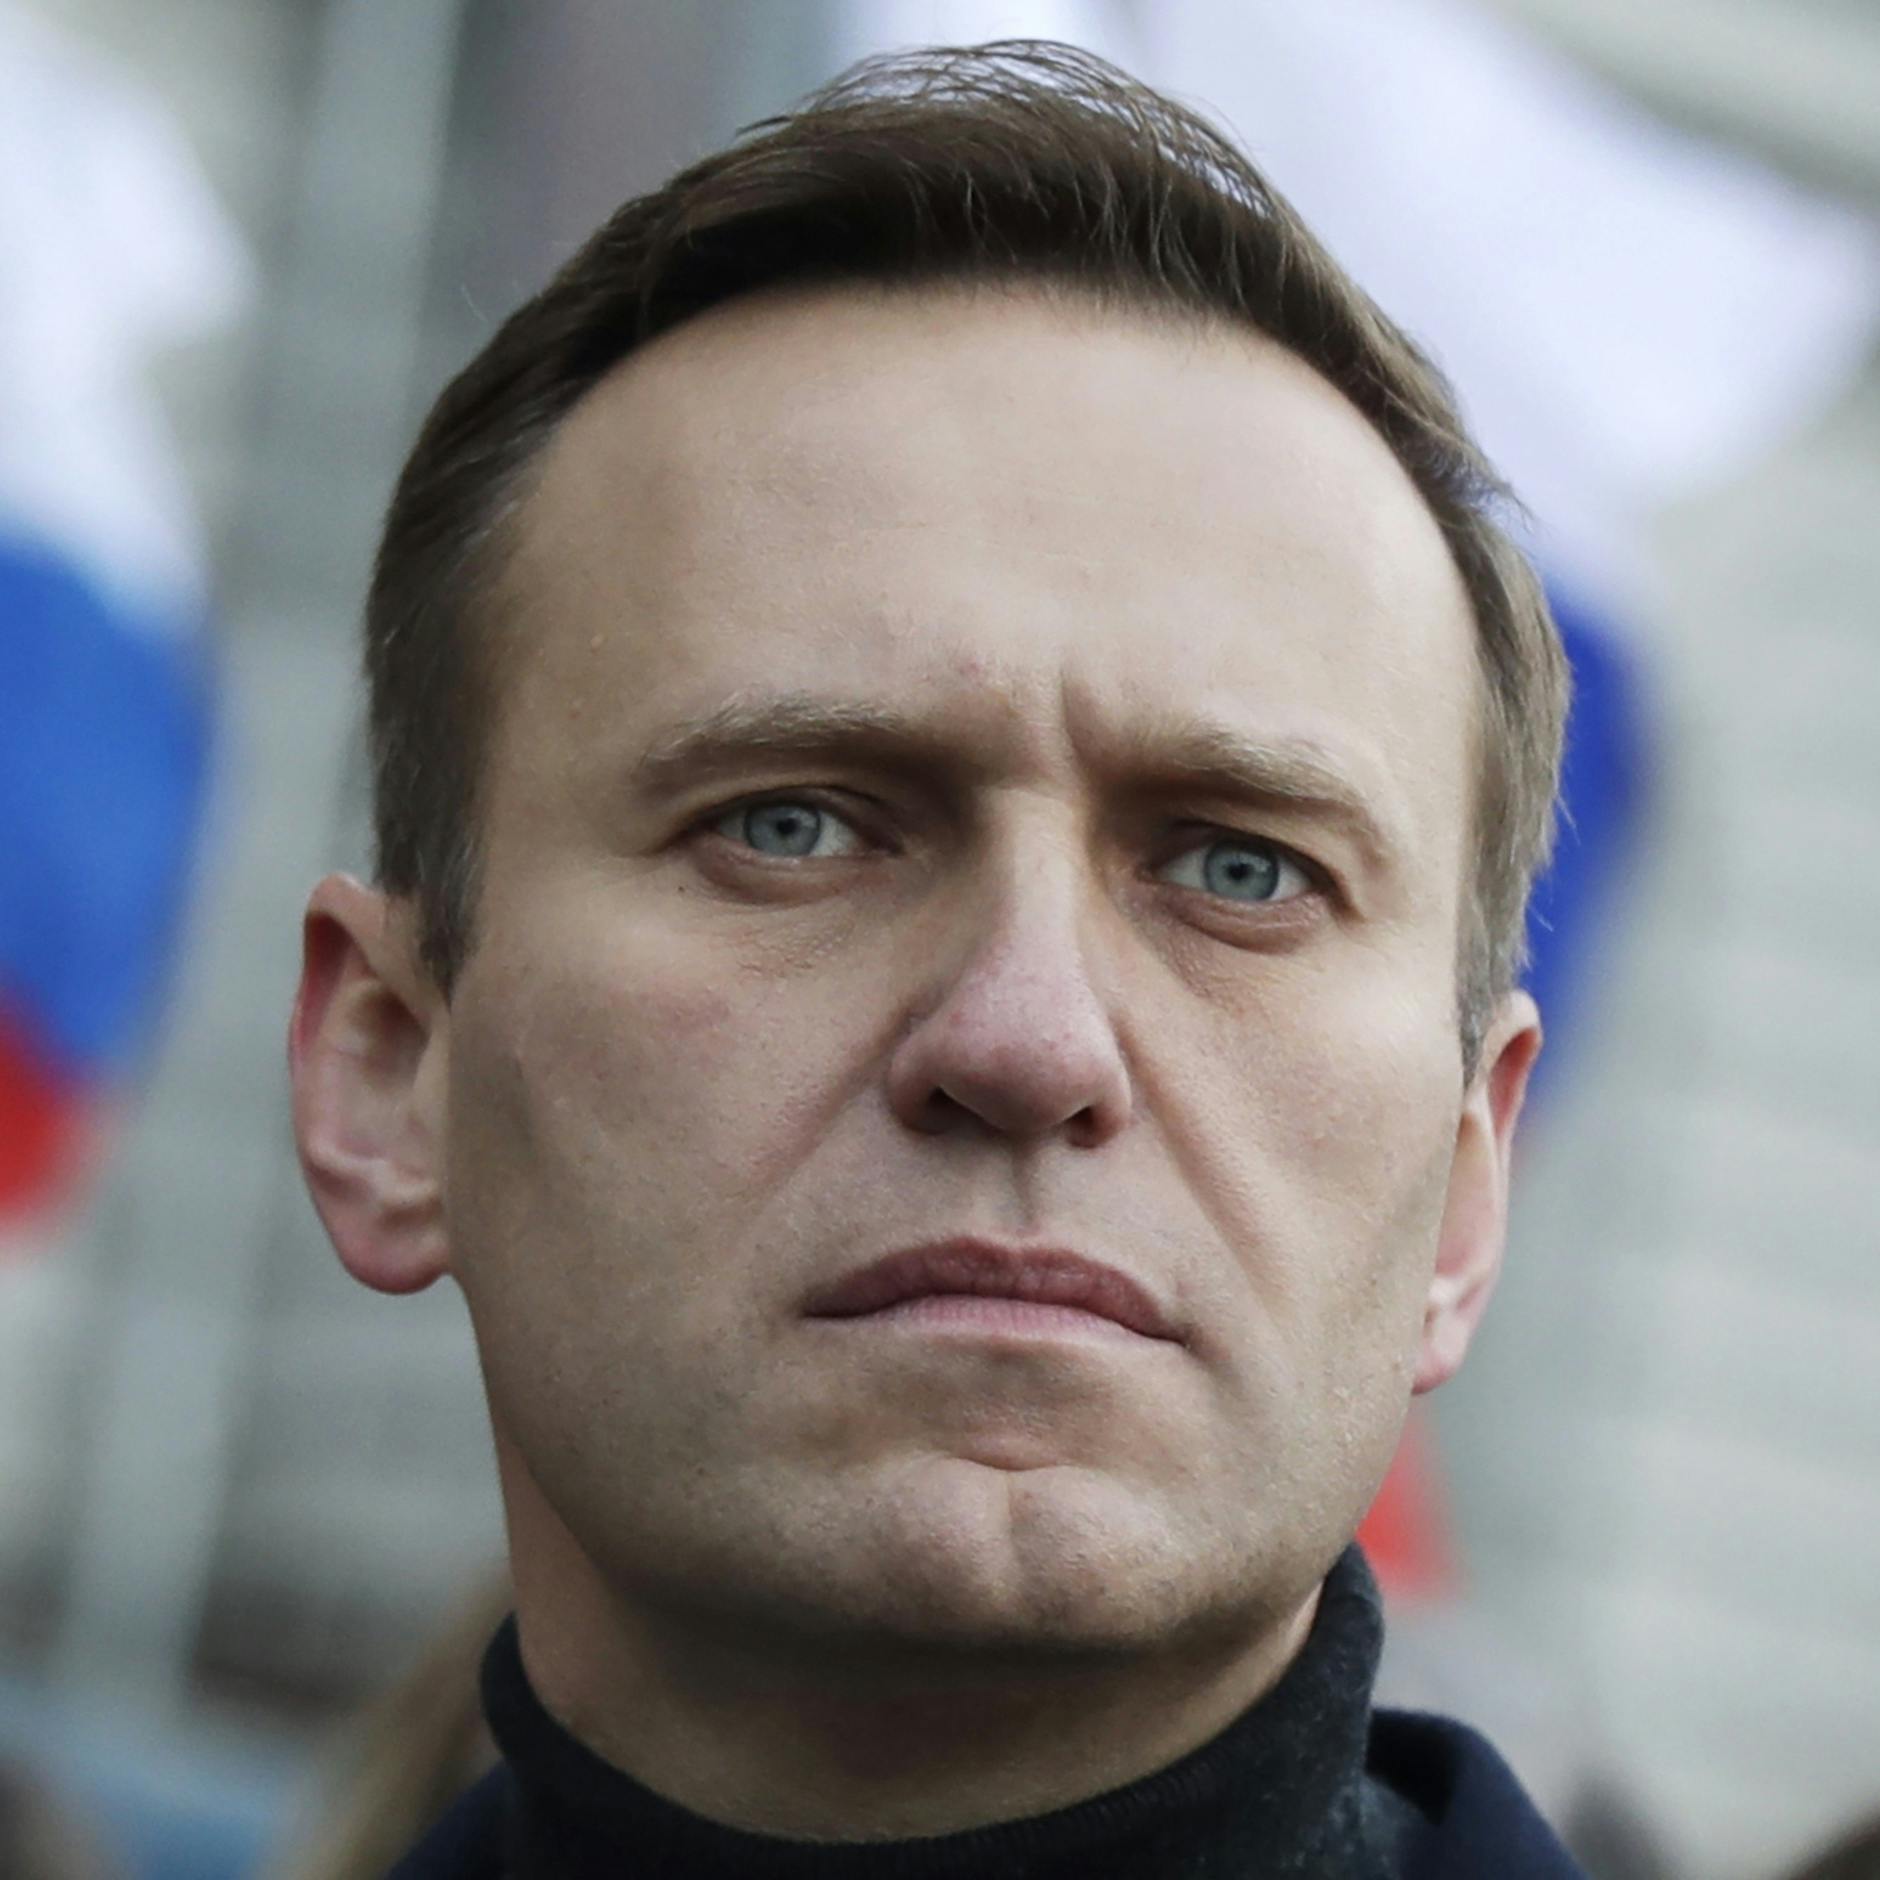 Russische oppositieleider Navalny veroordeeld voor extremisme, krijgt tot 19 jaar cel 